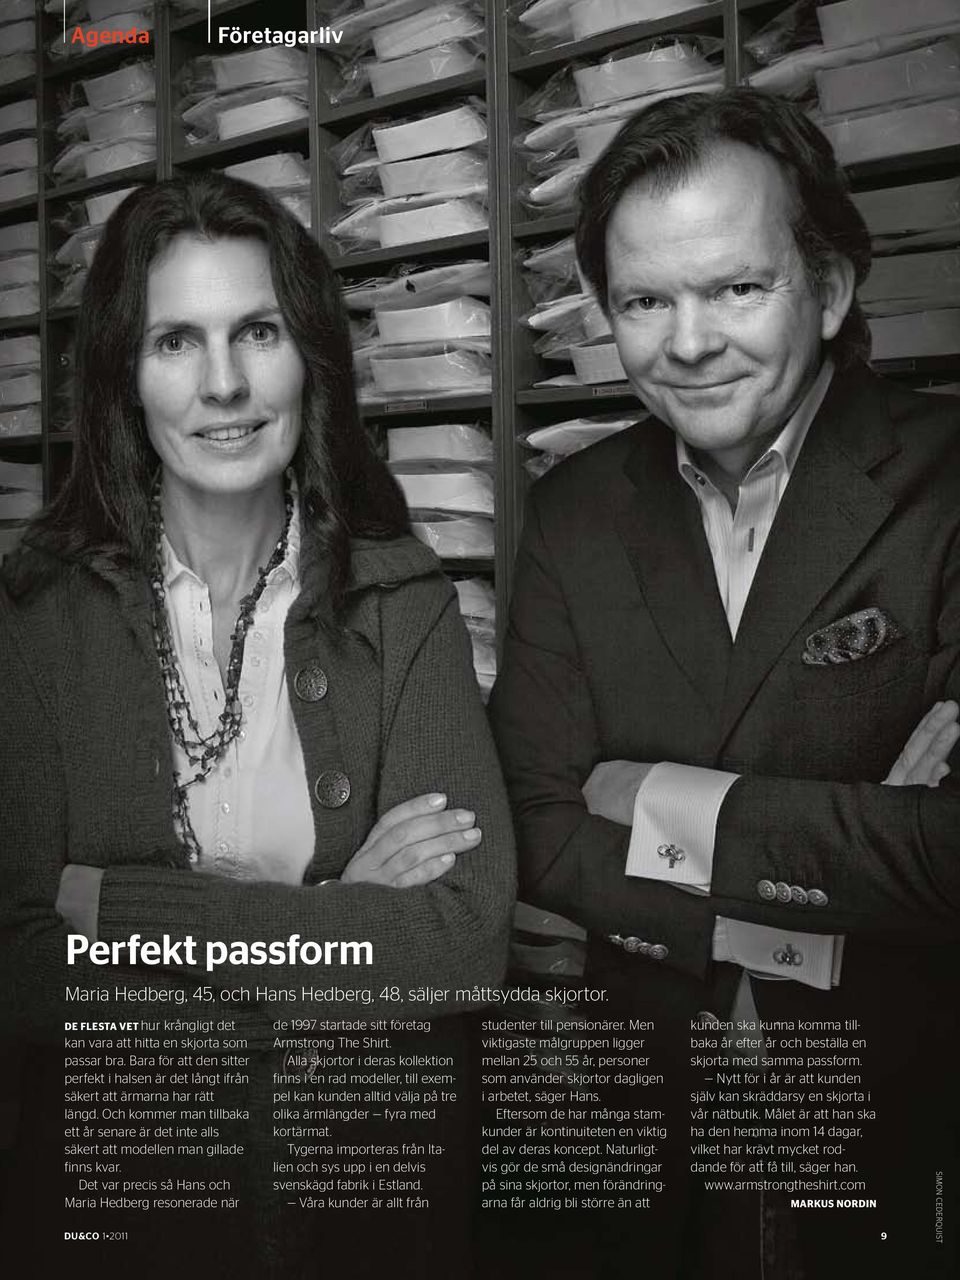 Det var precis så Hans och Maria Hedberg resonerade när de 1997 startade sitt företag Armstrong The Shirt.